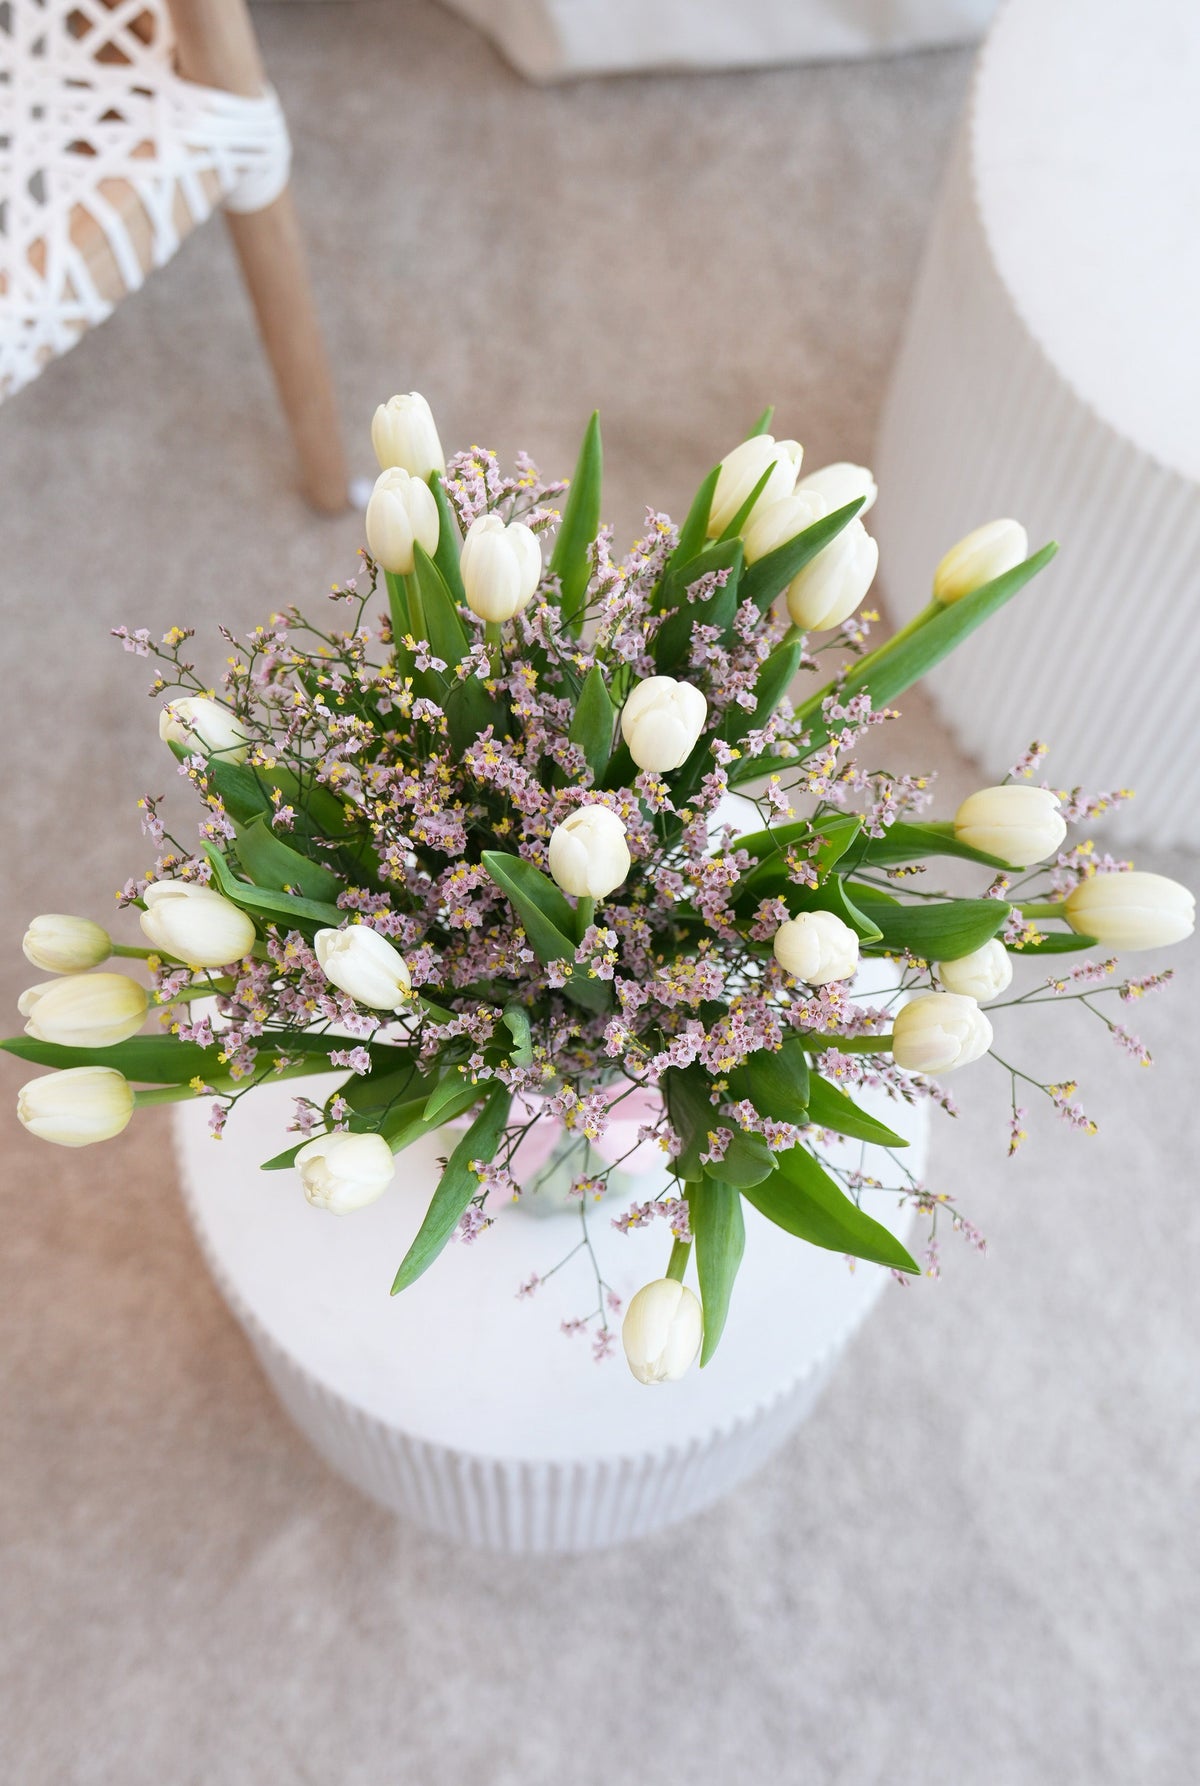 Sympathy White Tulips - Vase